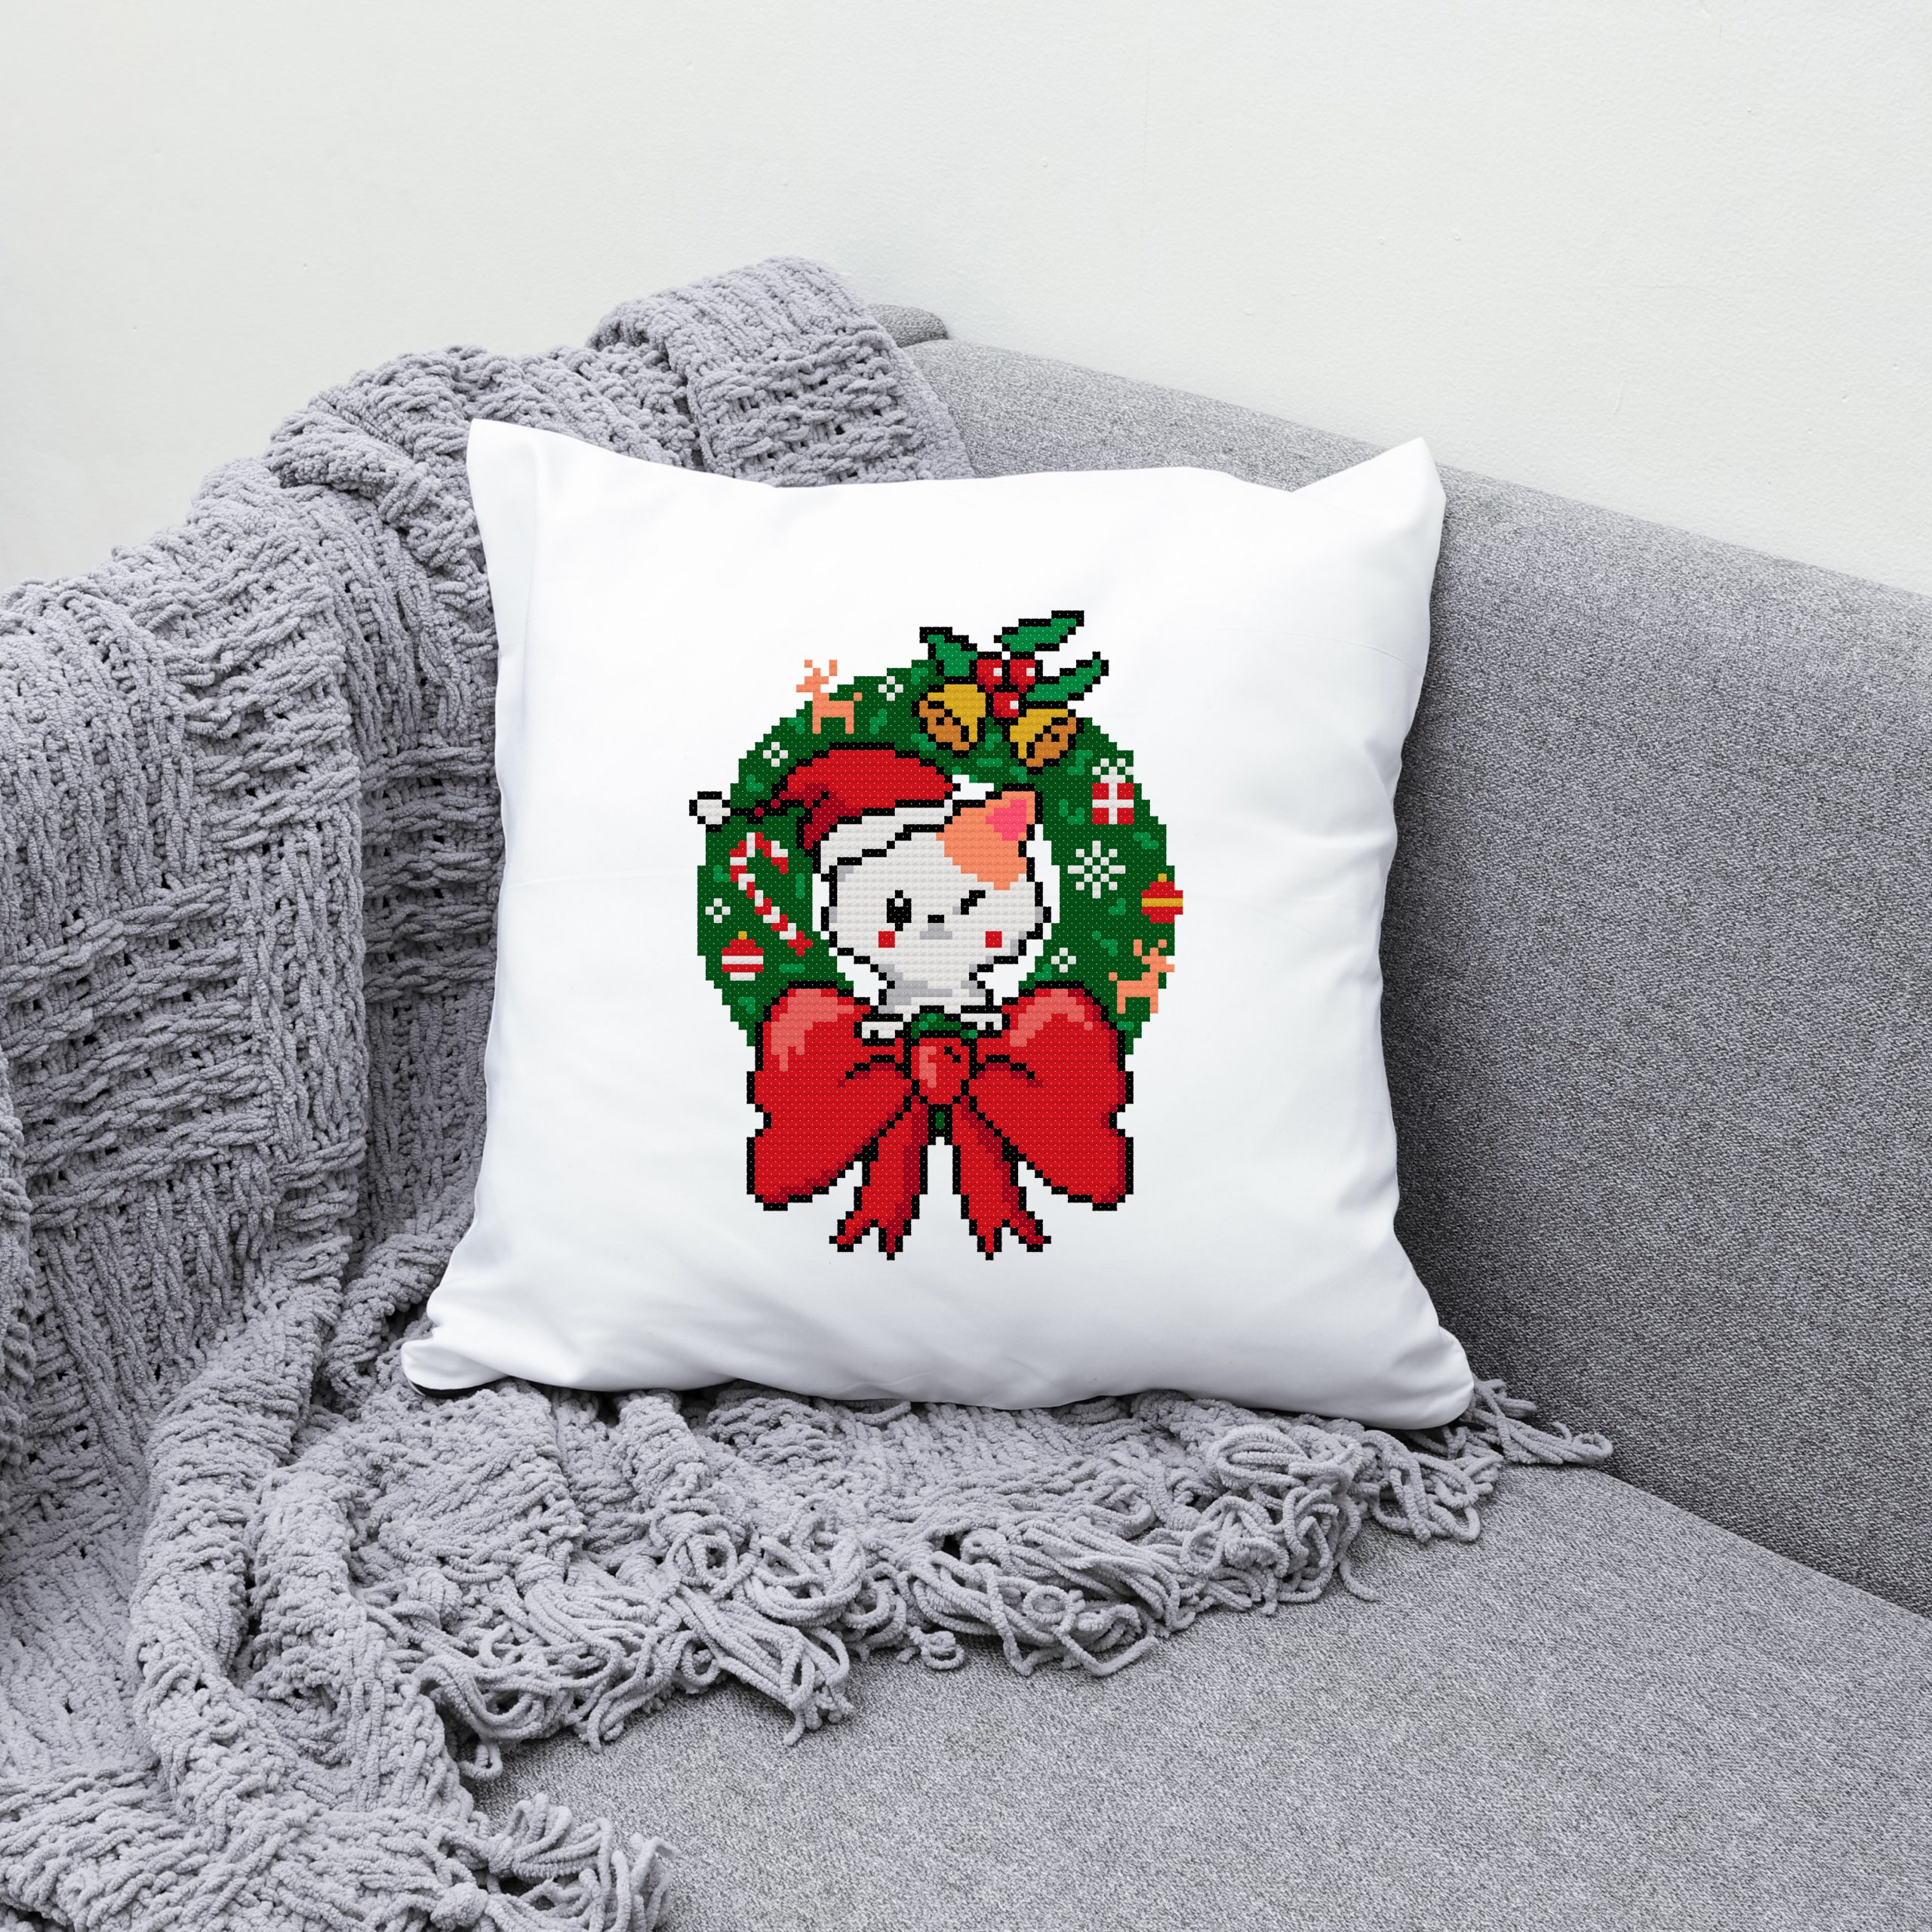 Christmas wreath cross stitch pattern PDF